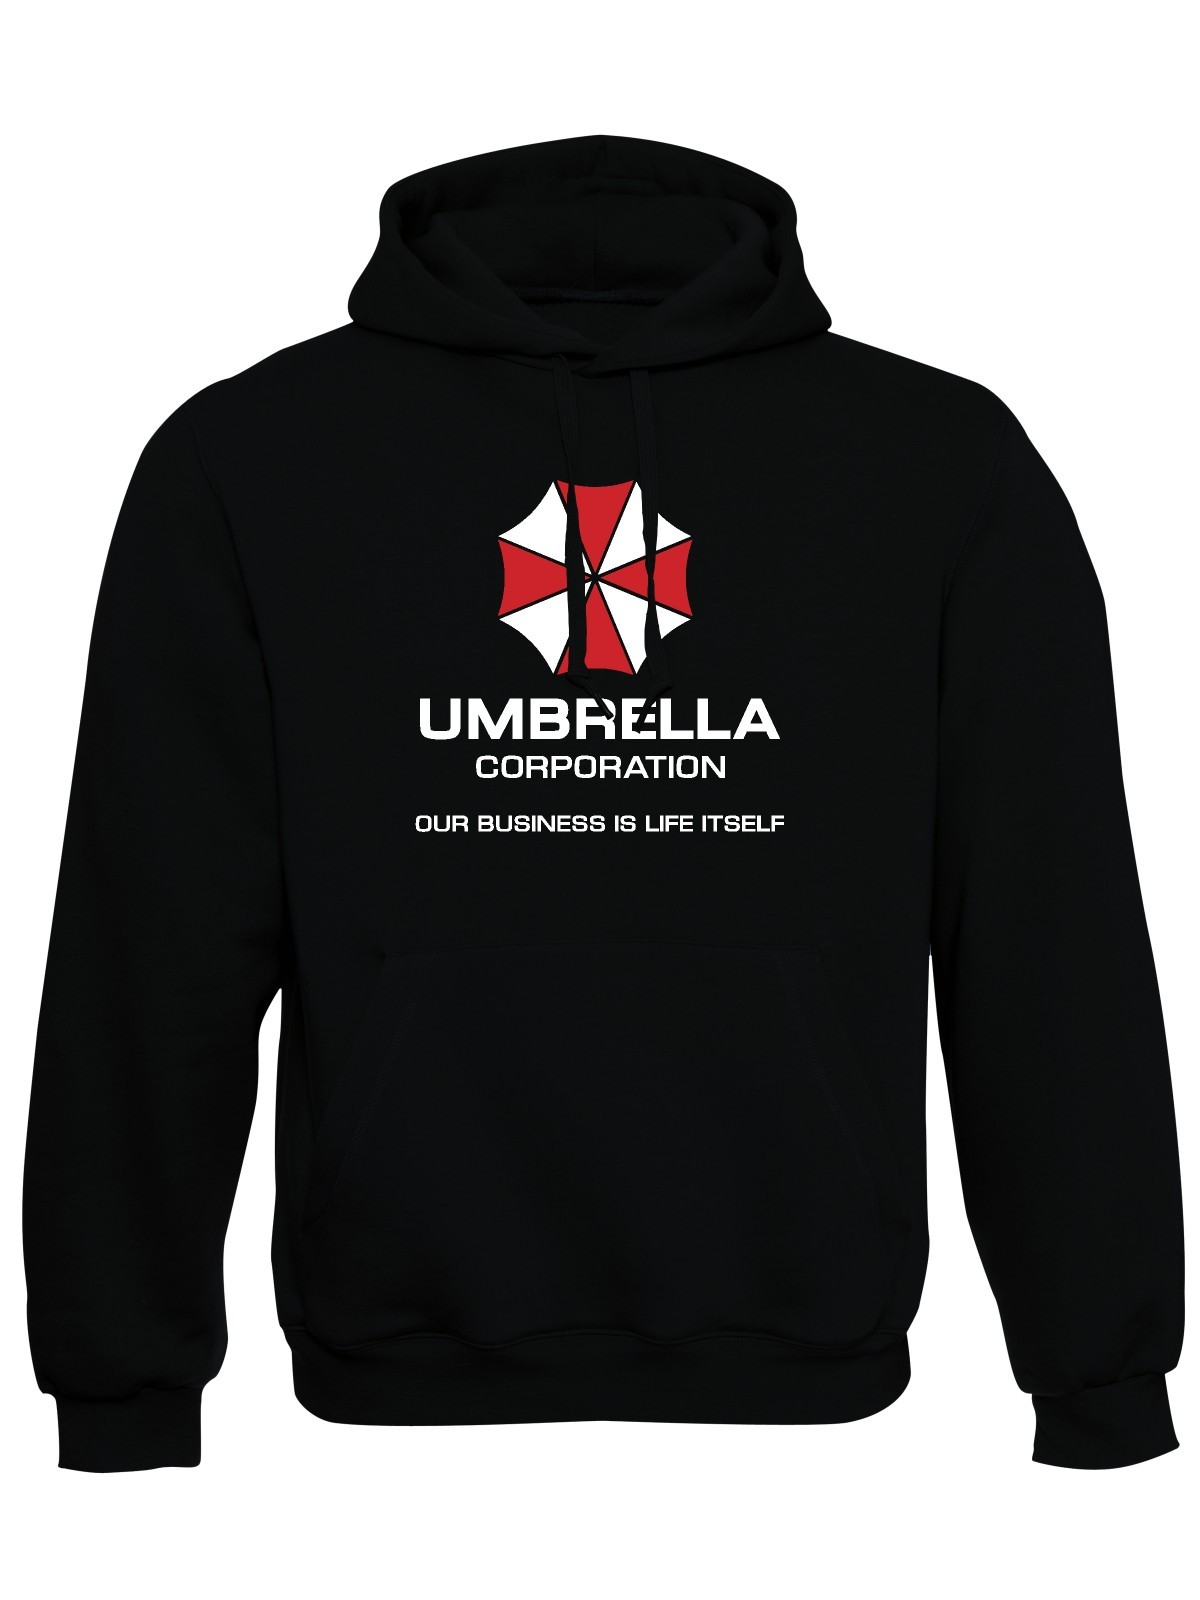 https://www.armytrika.cz/data/produkty/foto/big/mikina-s-kapuci-umbrella-corporation-01.jpg